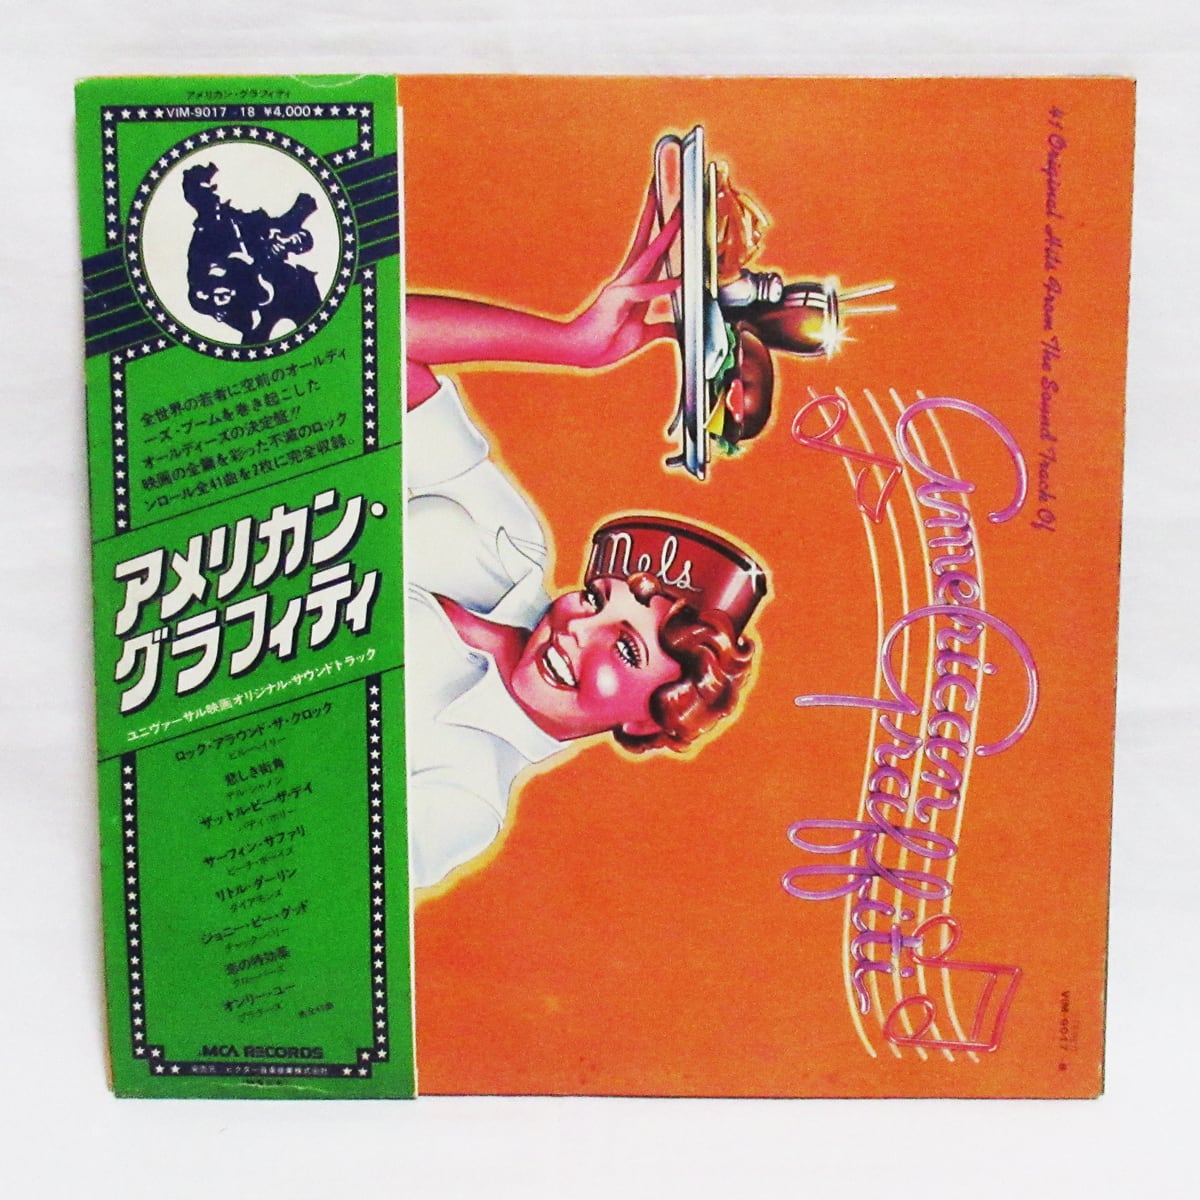 キャンディ オリジナルサウンドトラック レコード USオリジナル盤